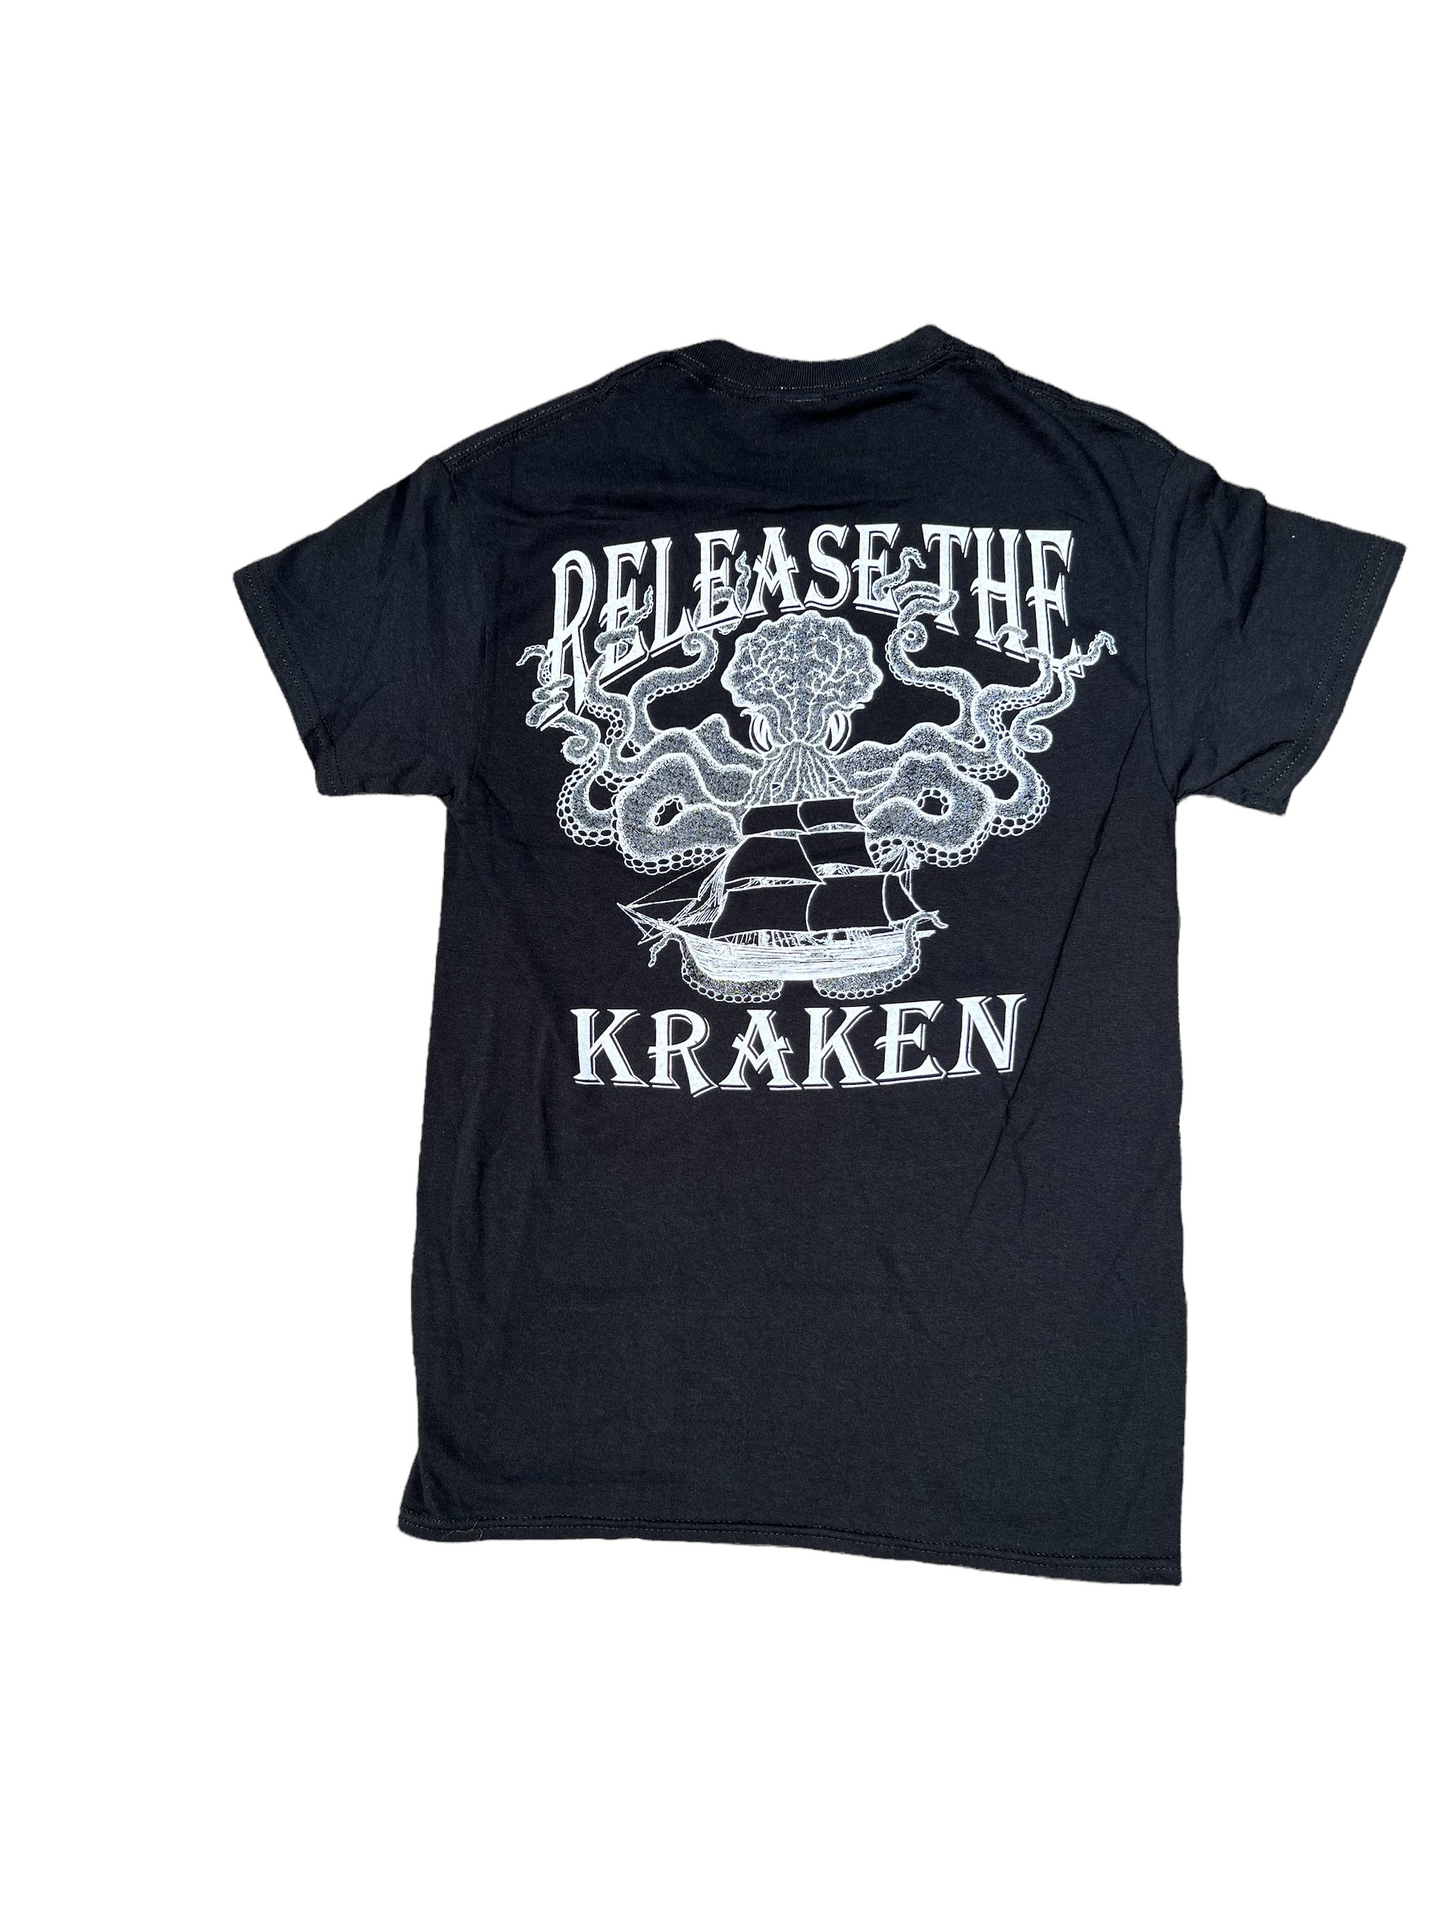 Release The Kraken - T Shirt - Black